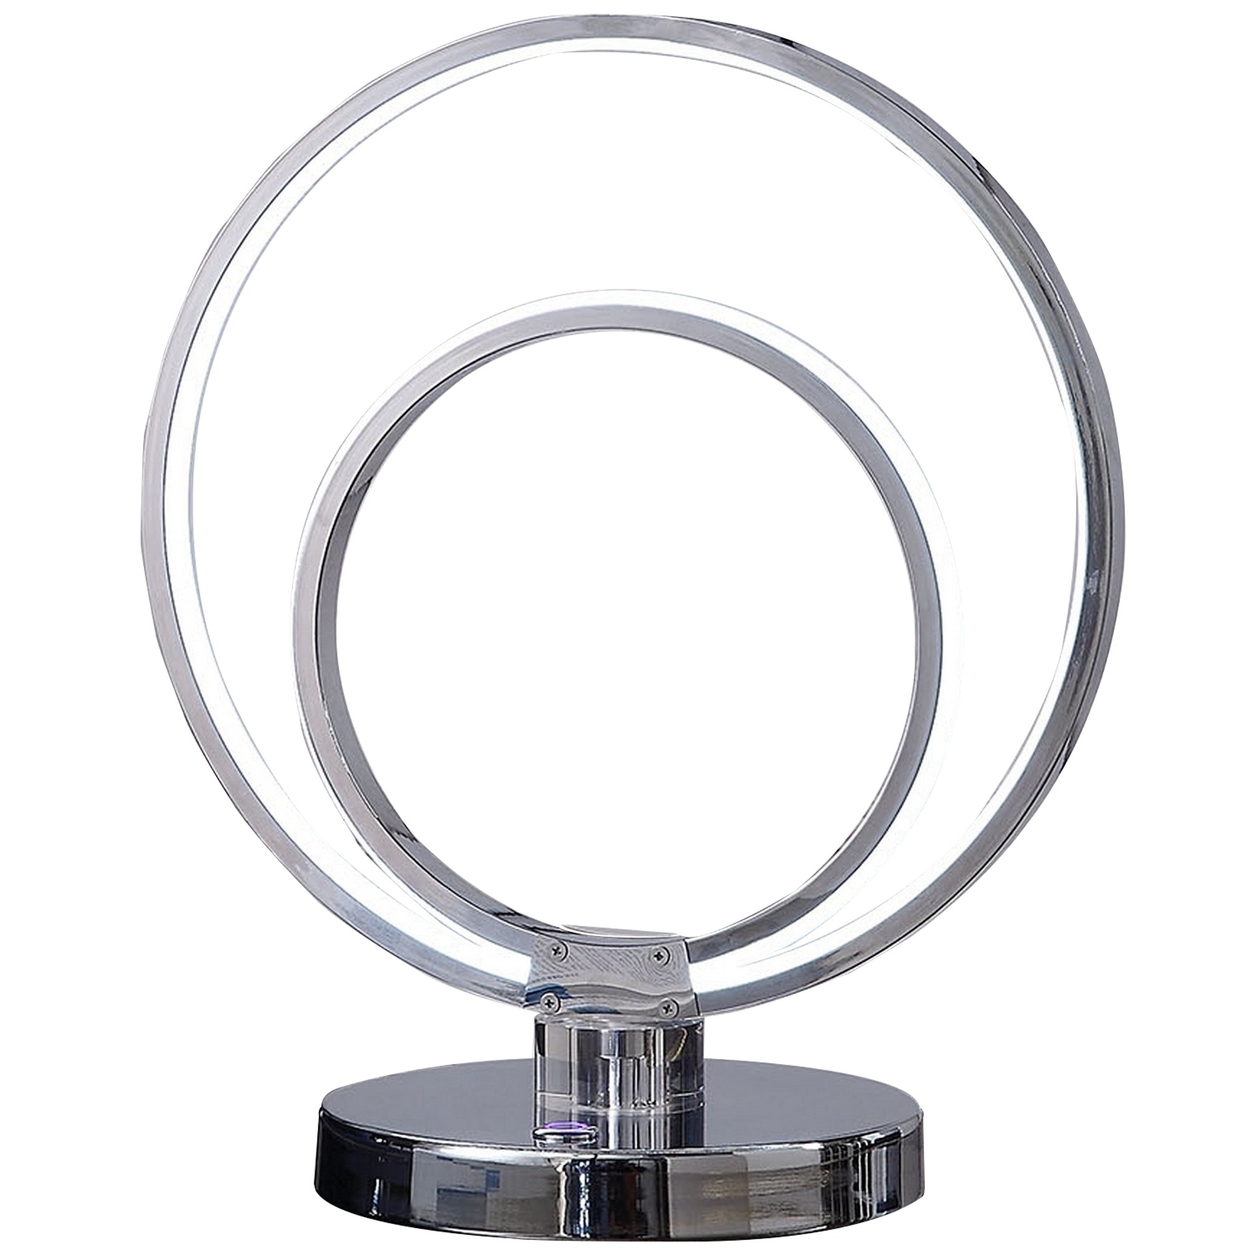 14 Inch Table Lamp, Modern Ring LED Light, Round Metal Base, Silver -Saltoro Sherpi